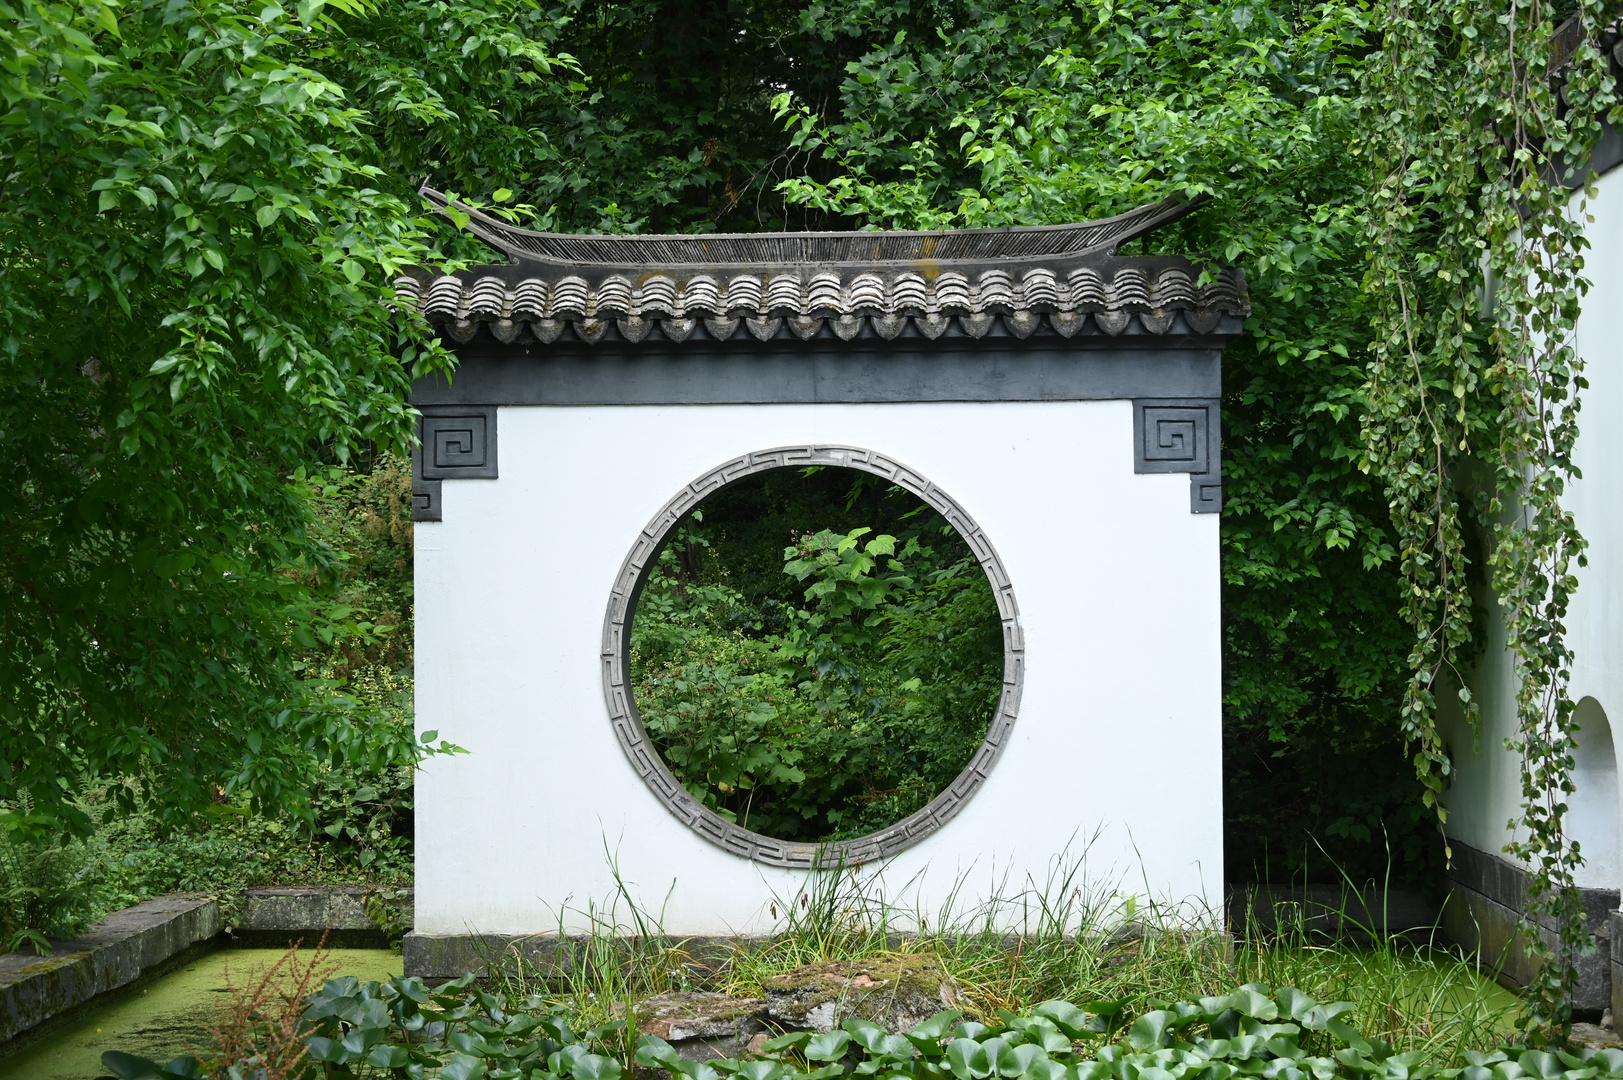 Chinesischer Garten Bochum